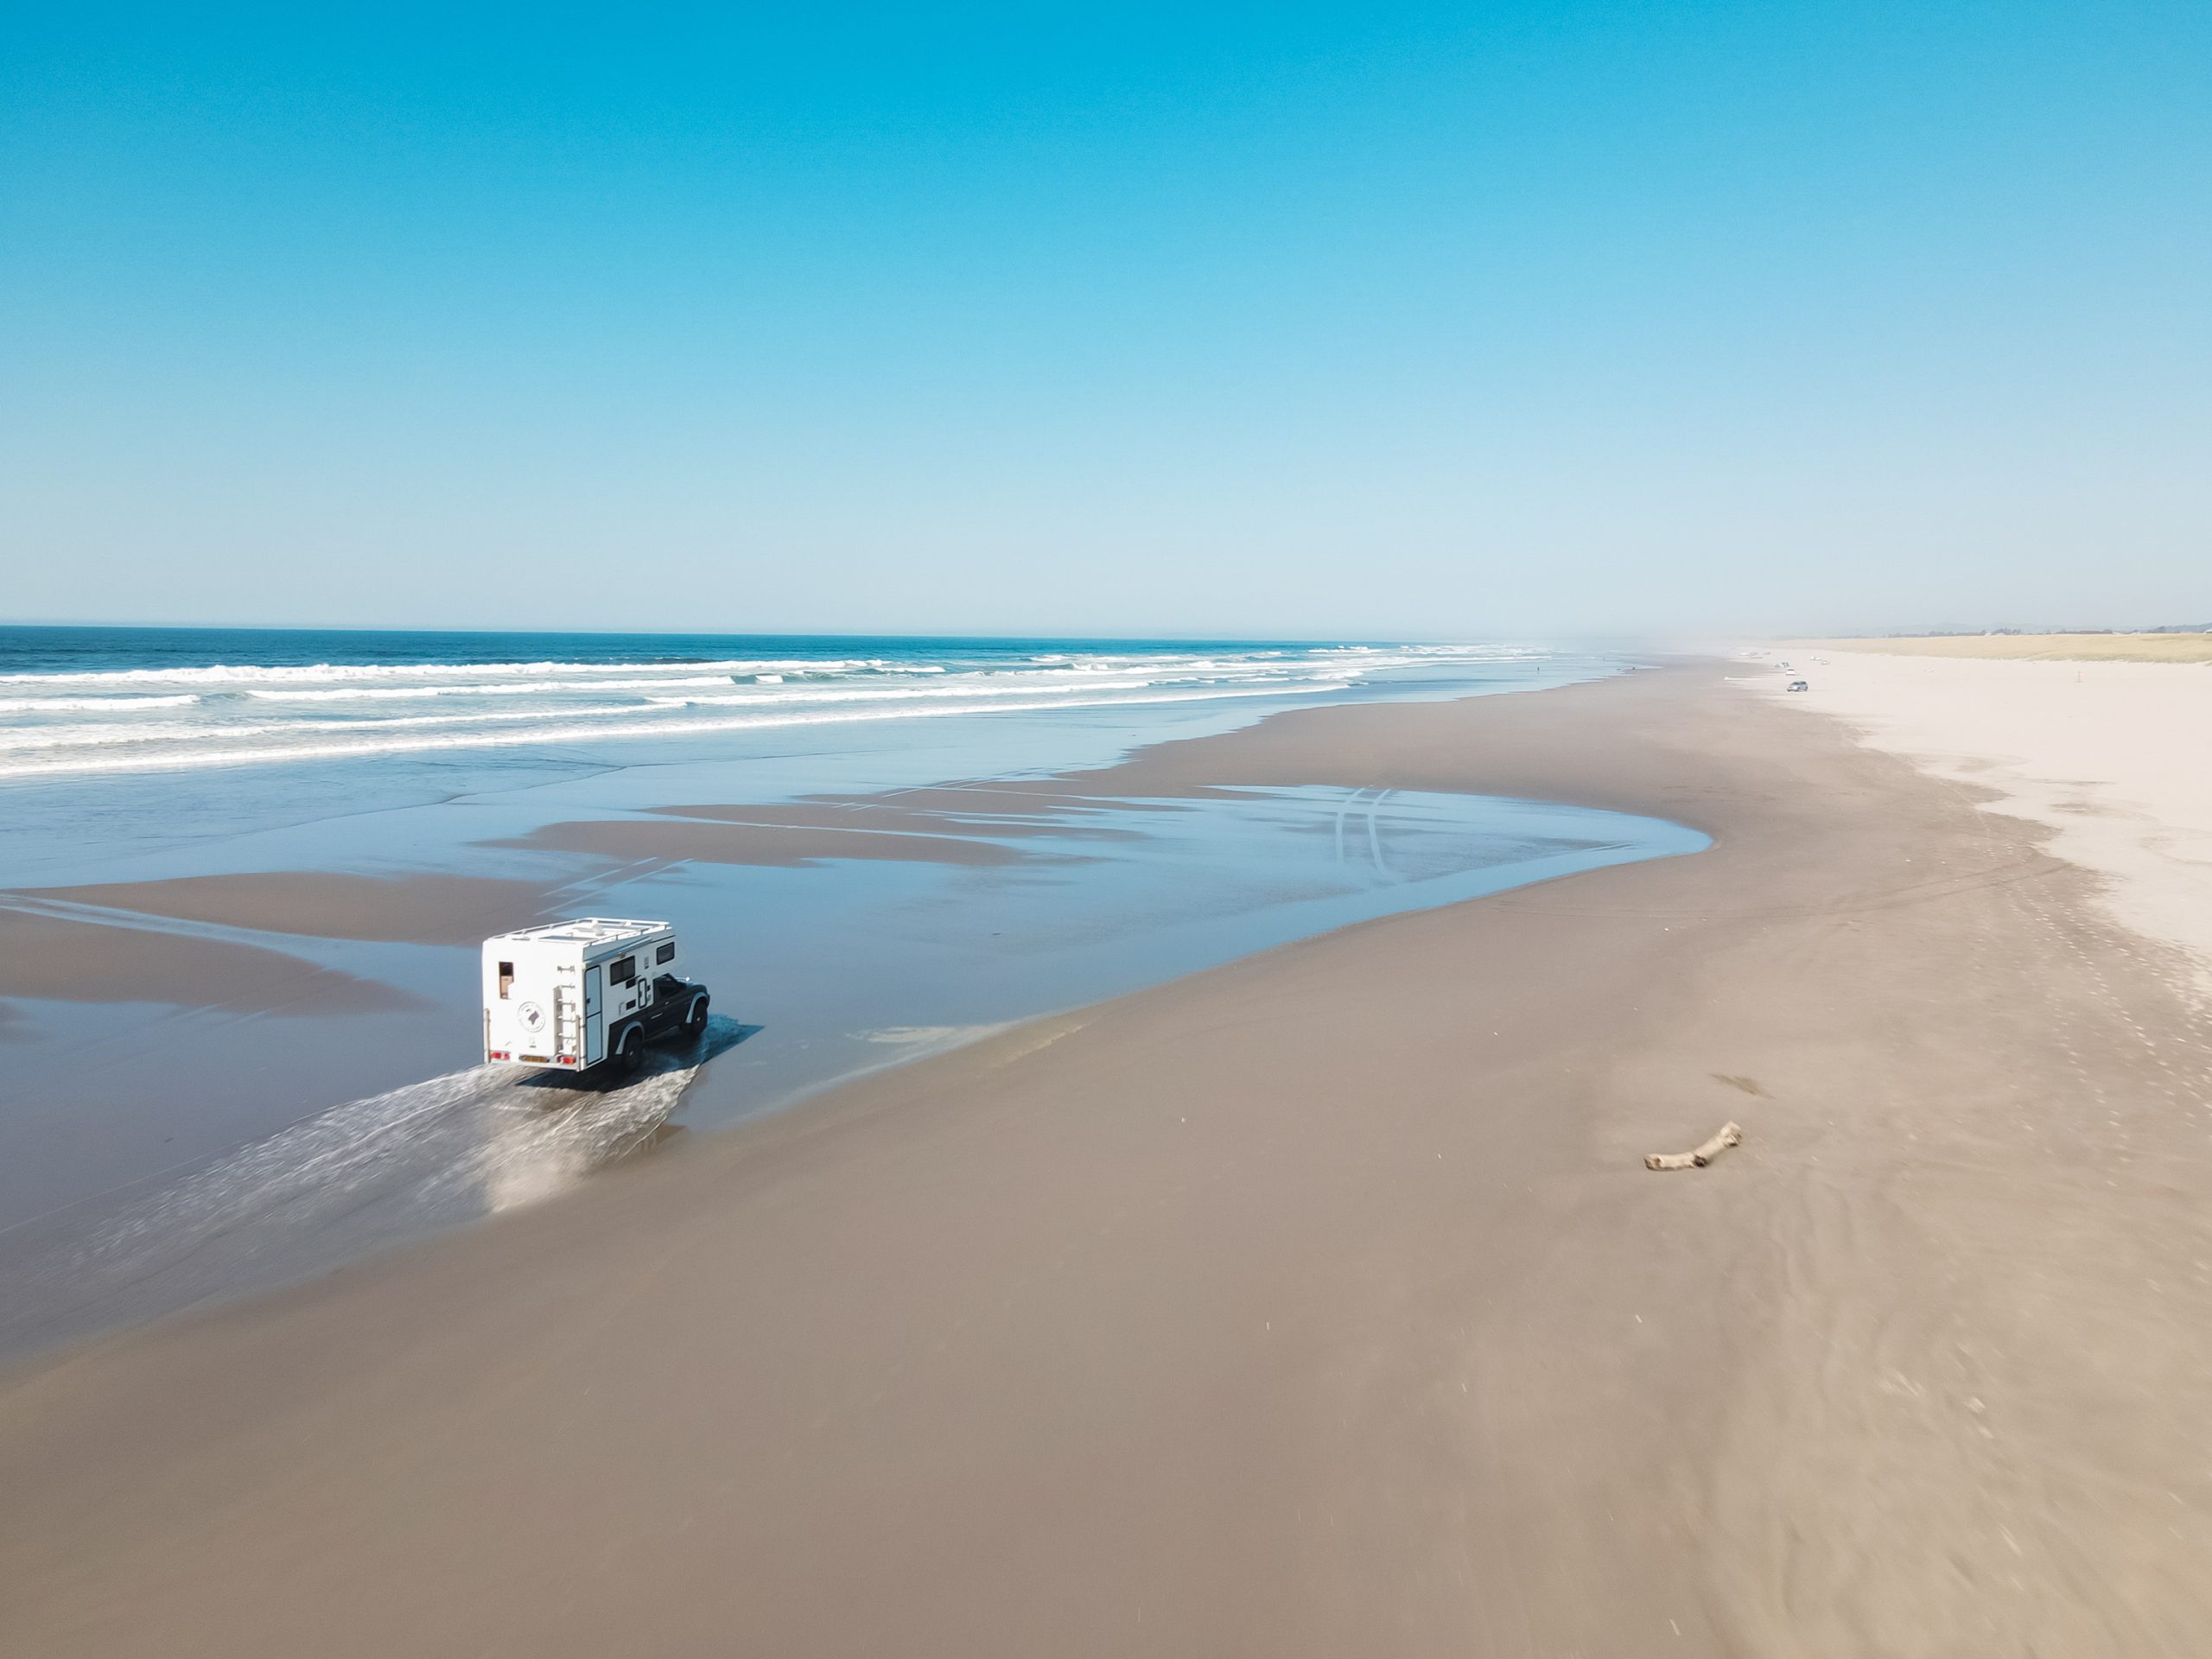 قيادة سيارات الدفع الرباعي على شاطئ الغروب